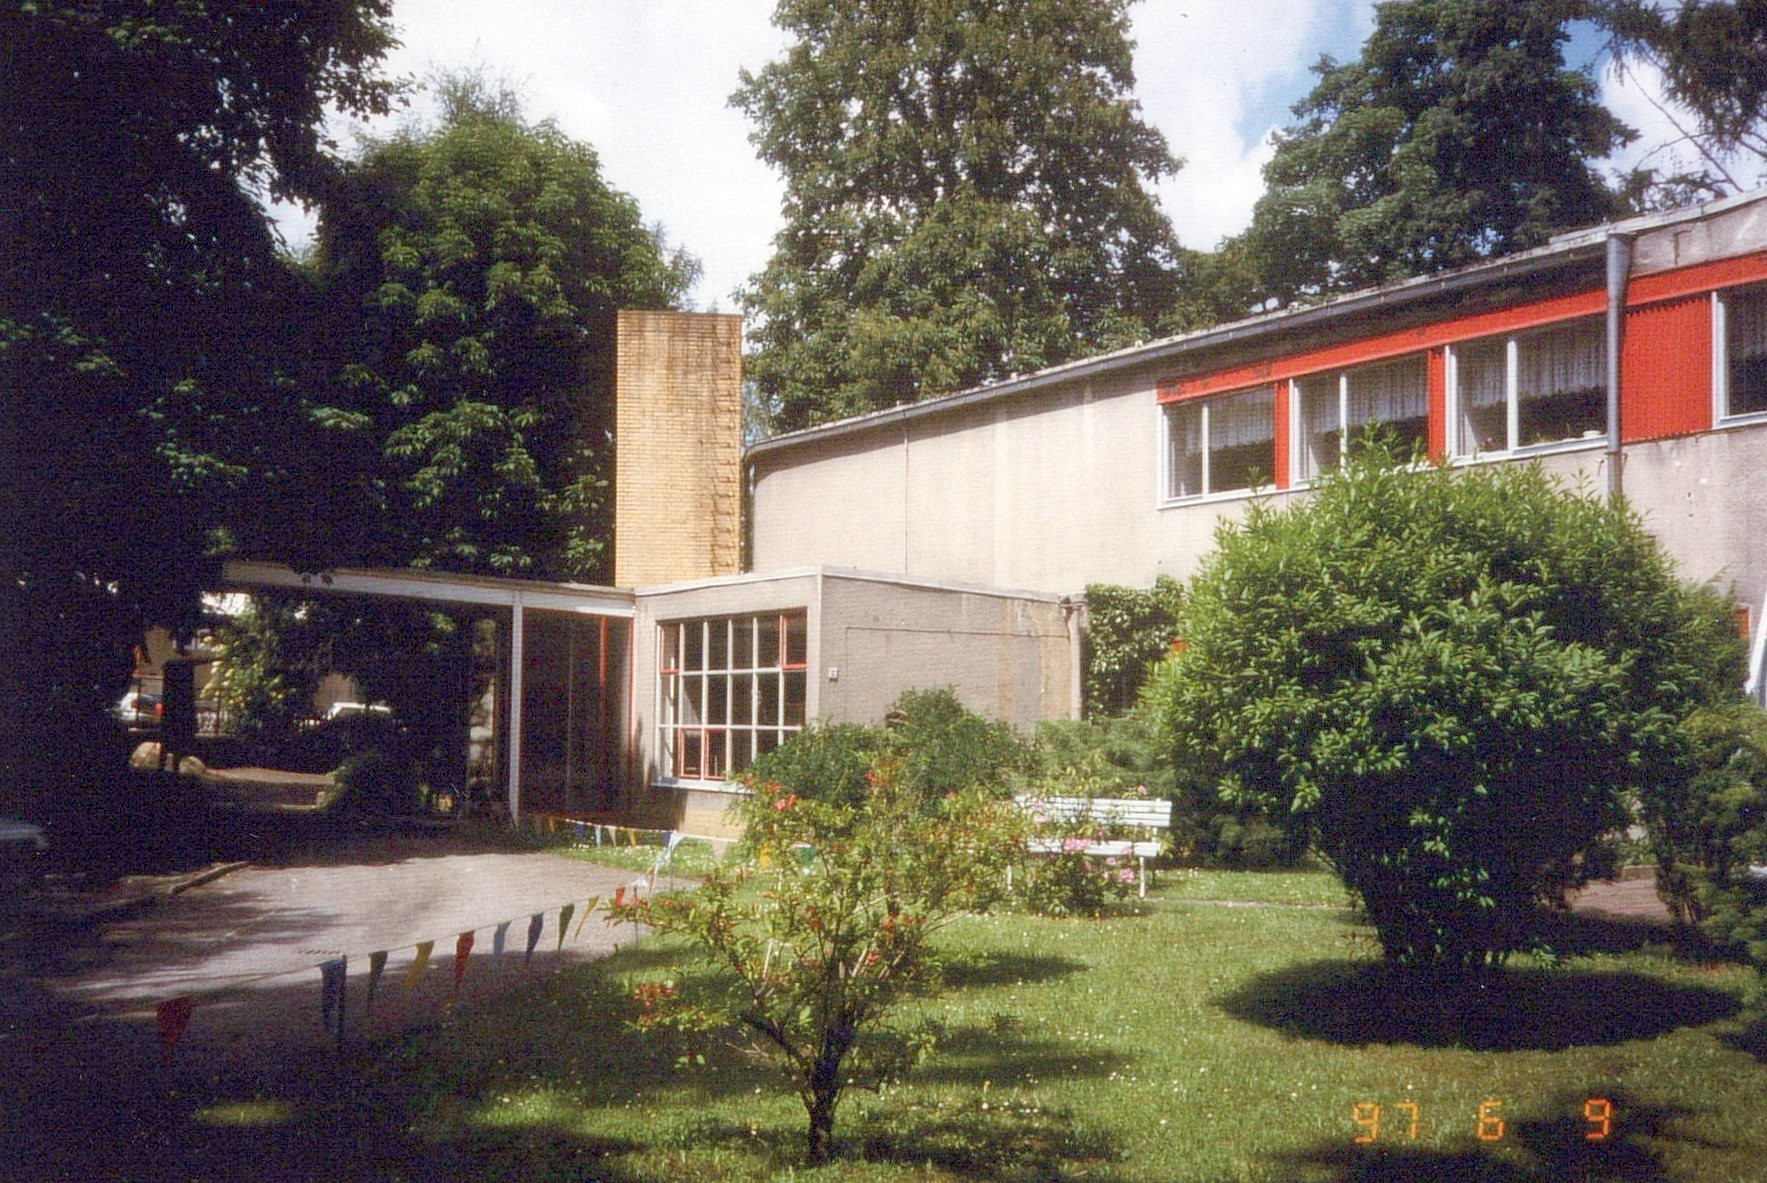 Fotografie: Blick zum Haus mit Eingangsbereich (Haus Schminke RR-F)